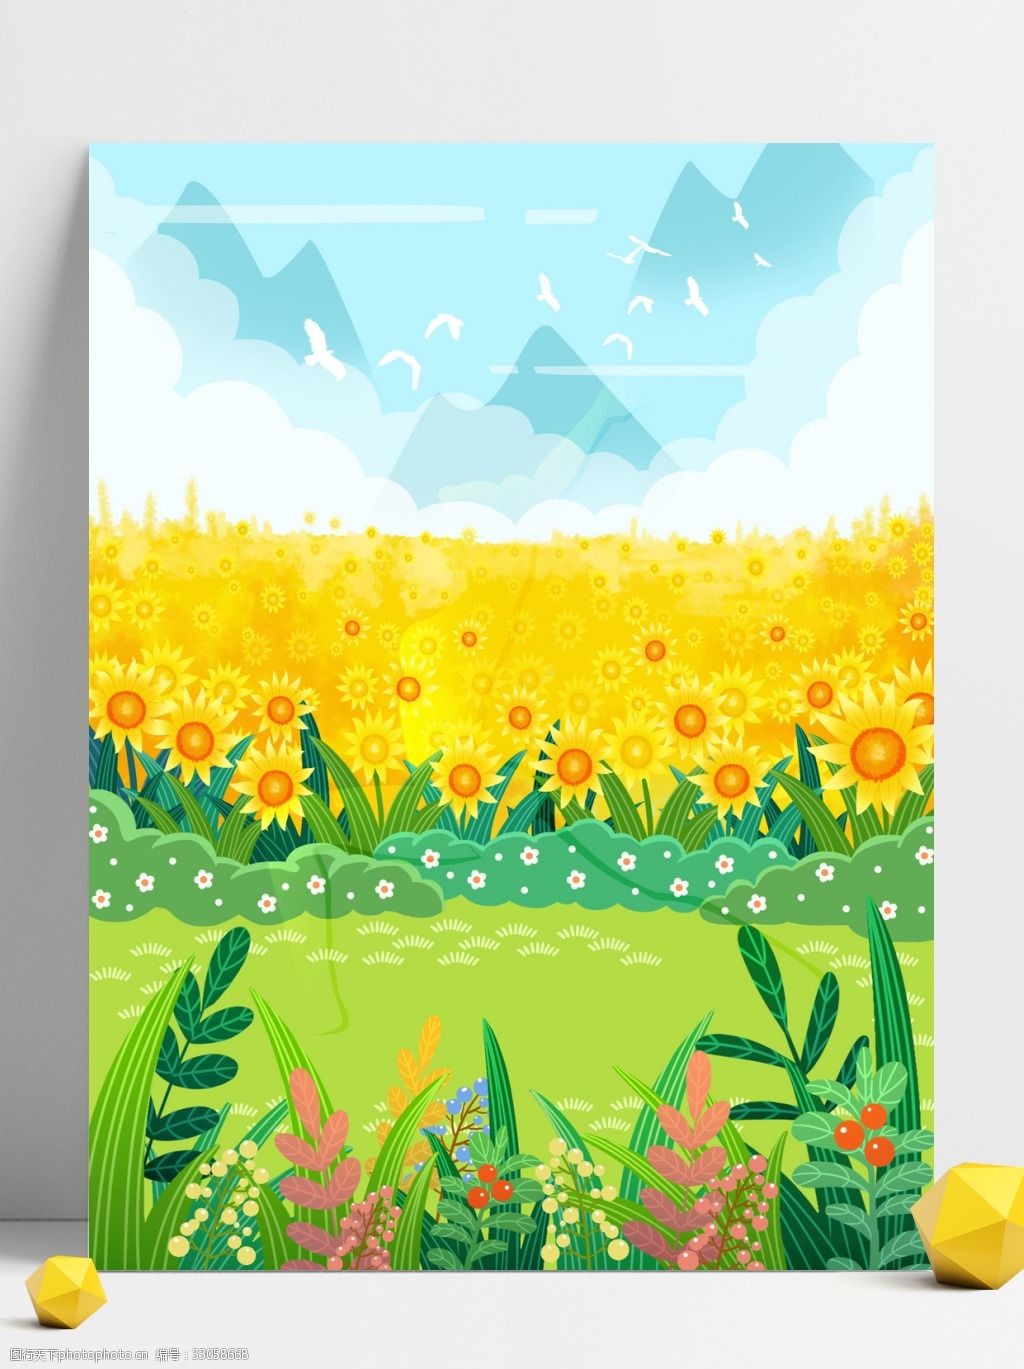 关键词:向日葵草地手绘背景 向日葵 植物 卡通 彩色 创意 装饰 背景